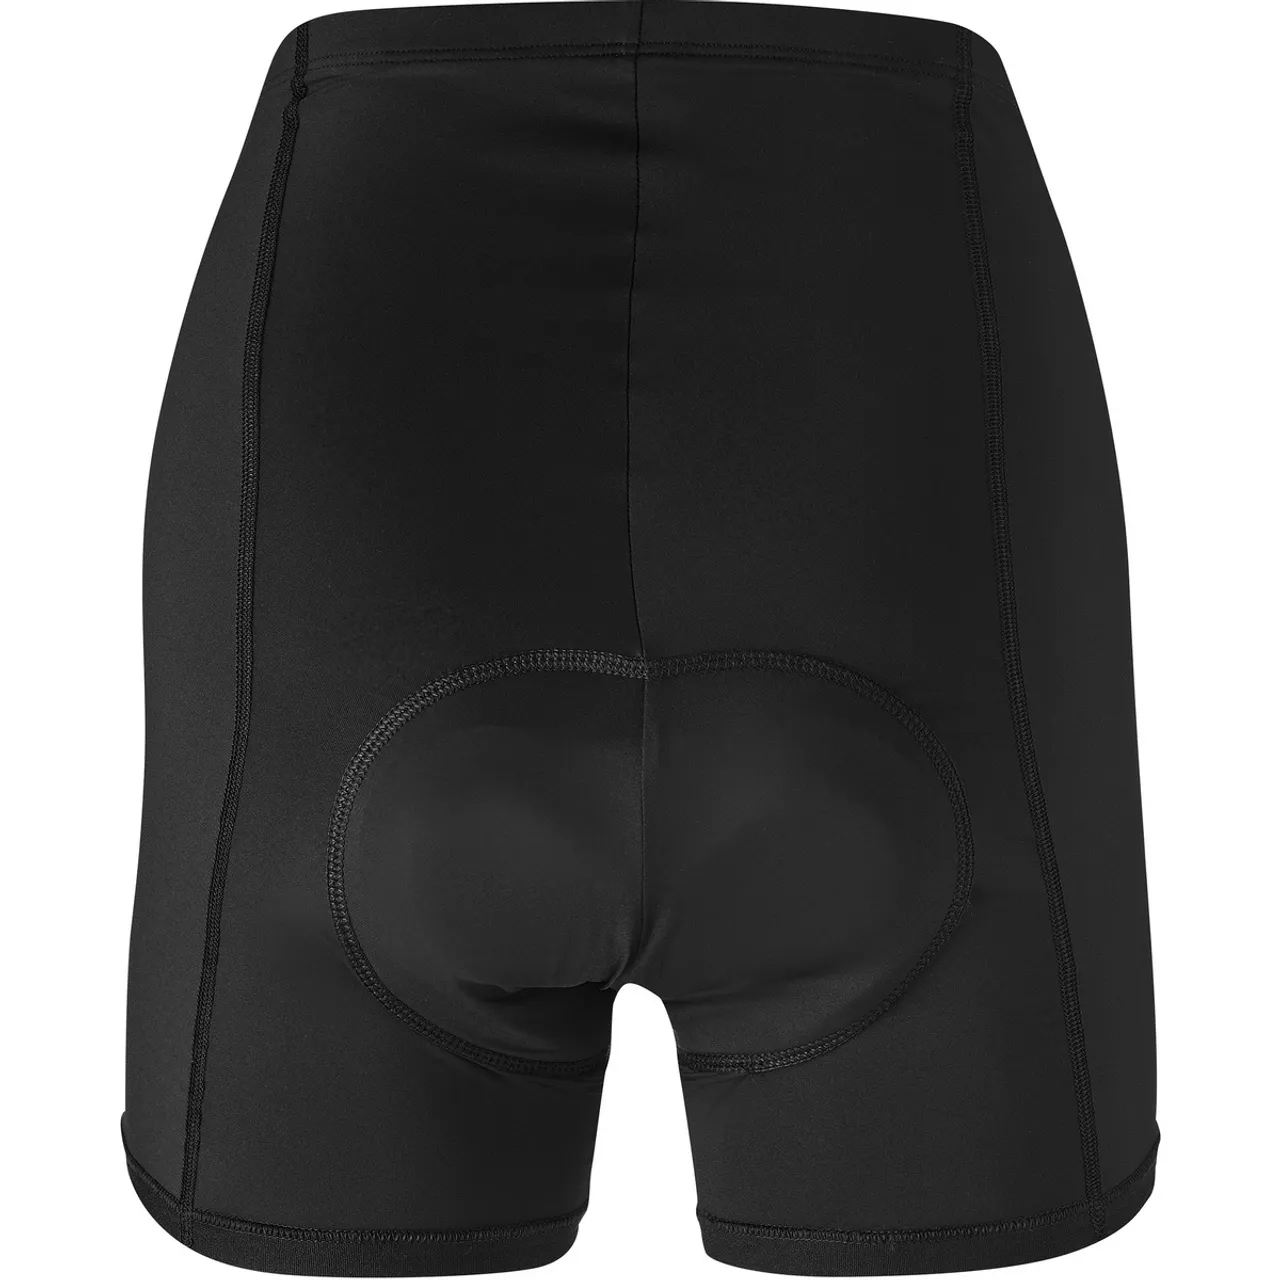 Gonso Damen Sitivo Unterhose mit Sitzpolster